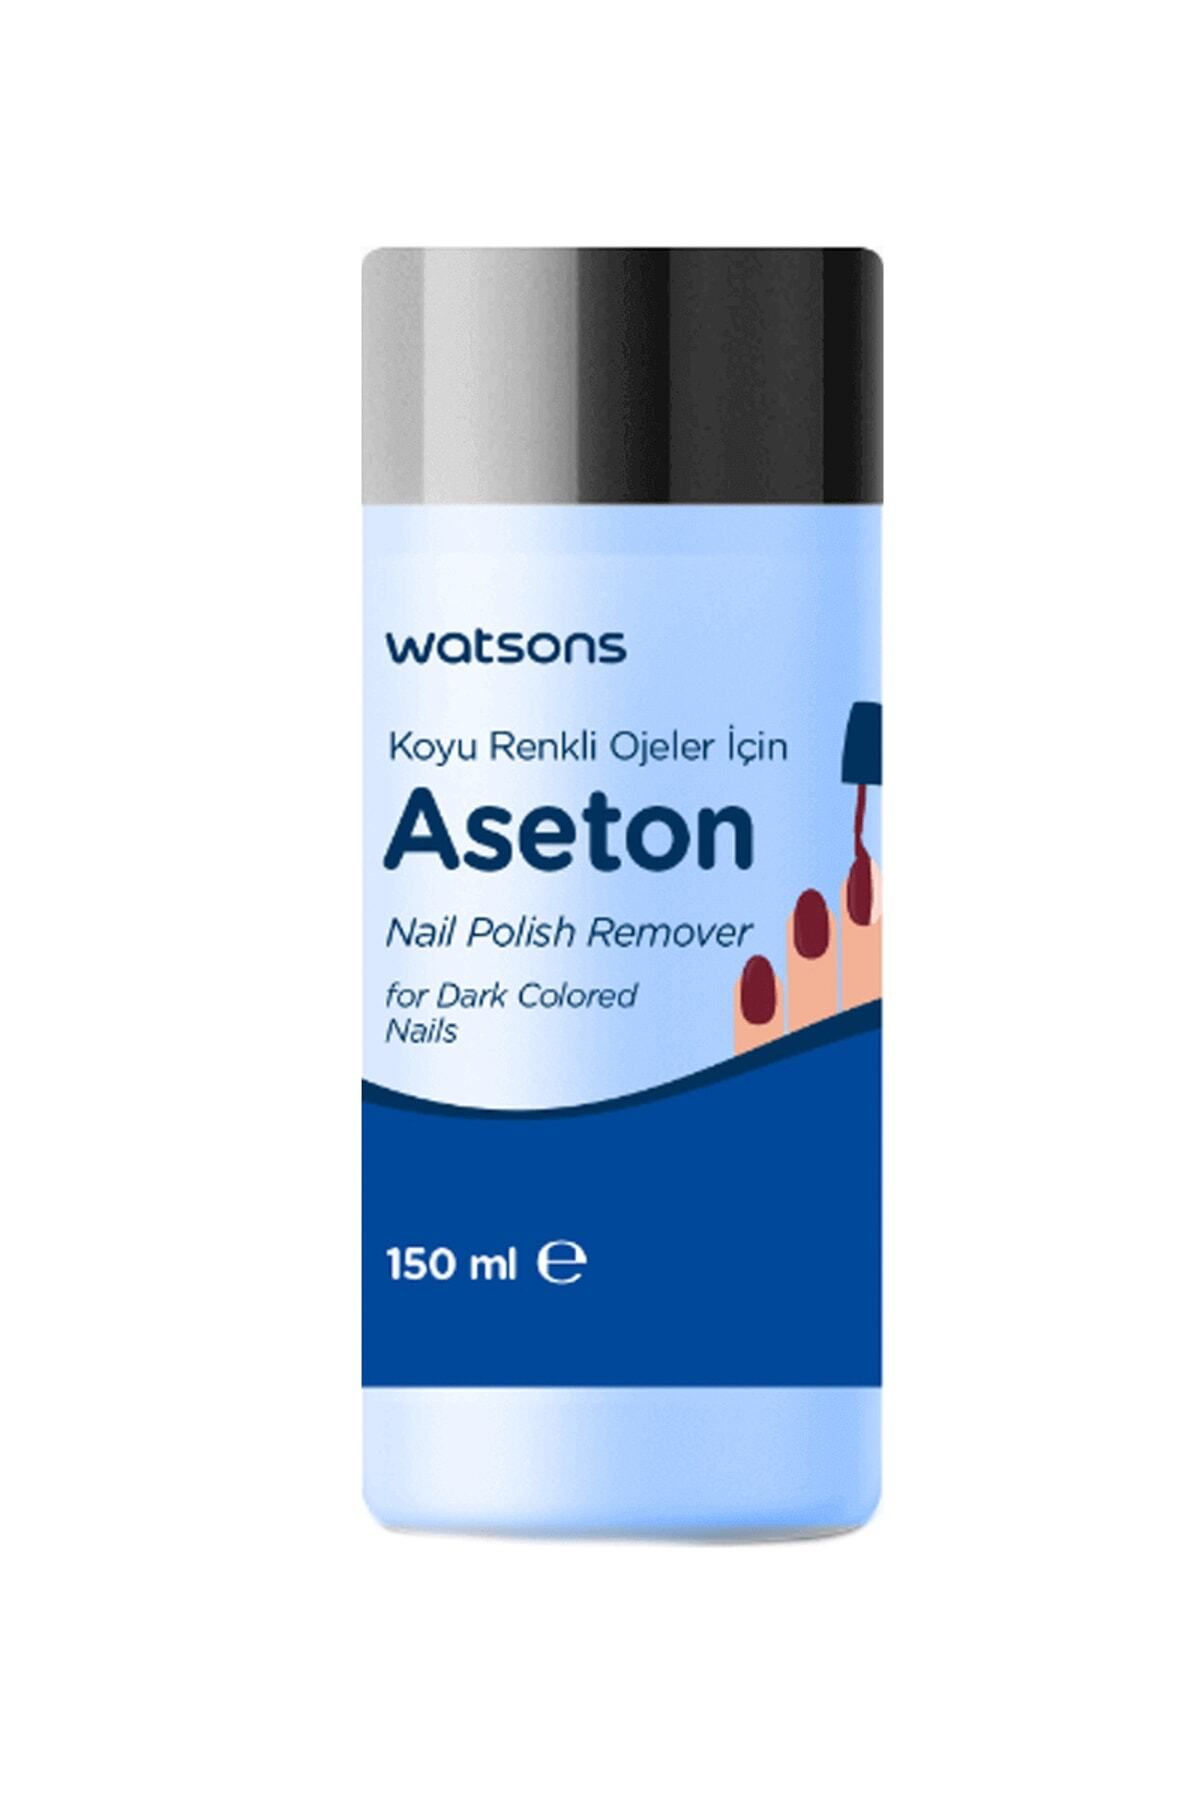 Watsons Koyu Renk Ojeler İçin Aseton 150 ml 2399900902278